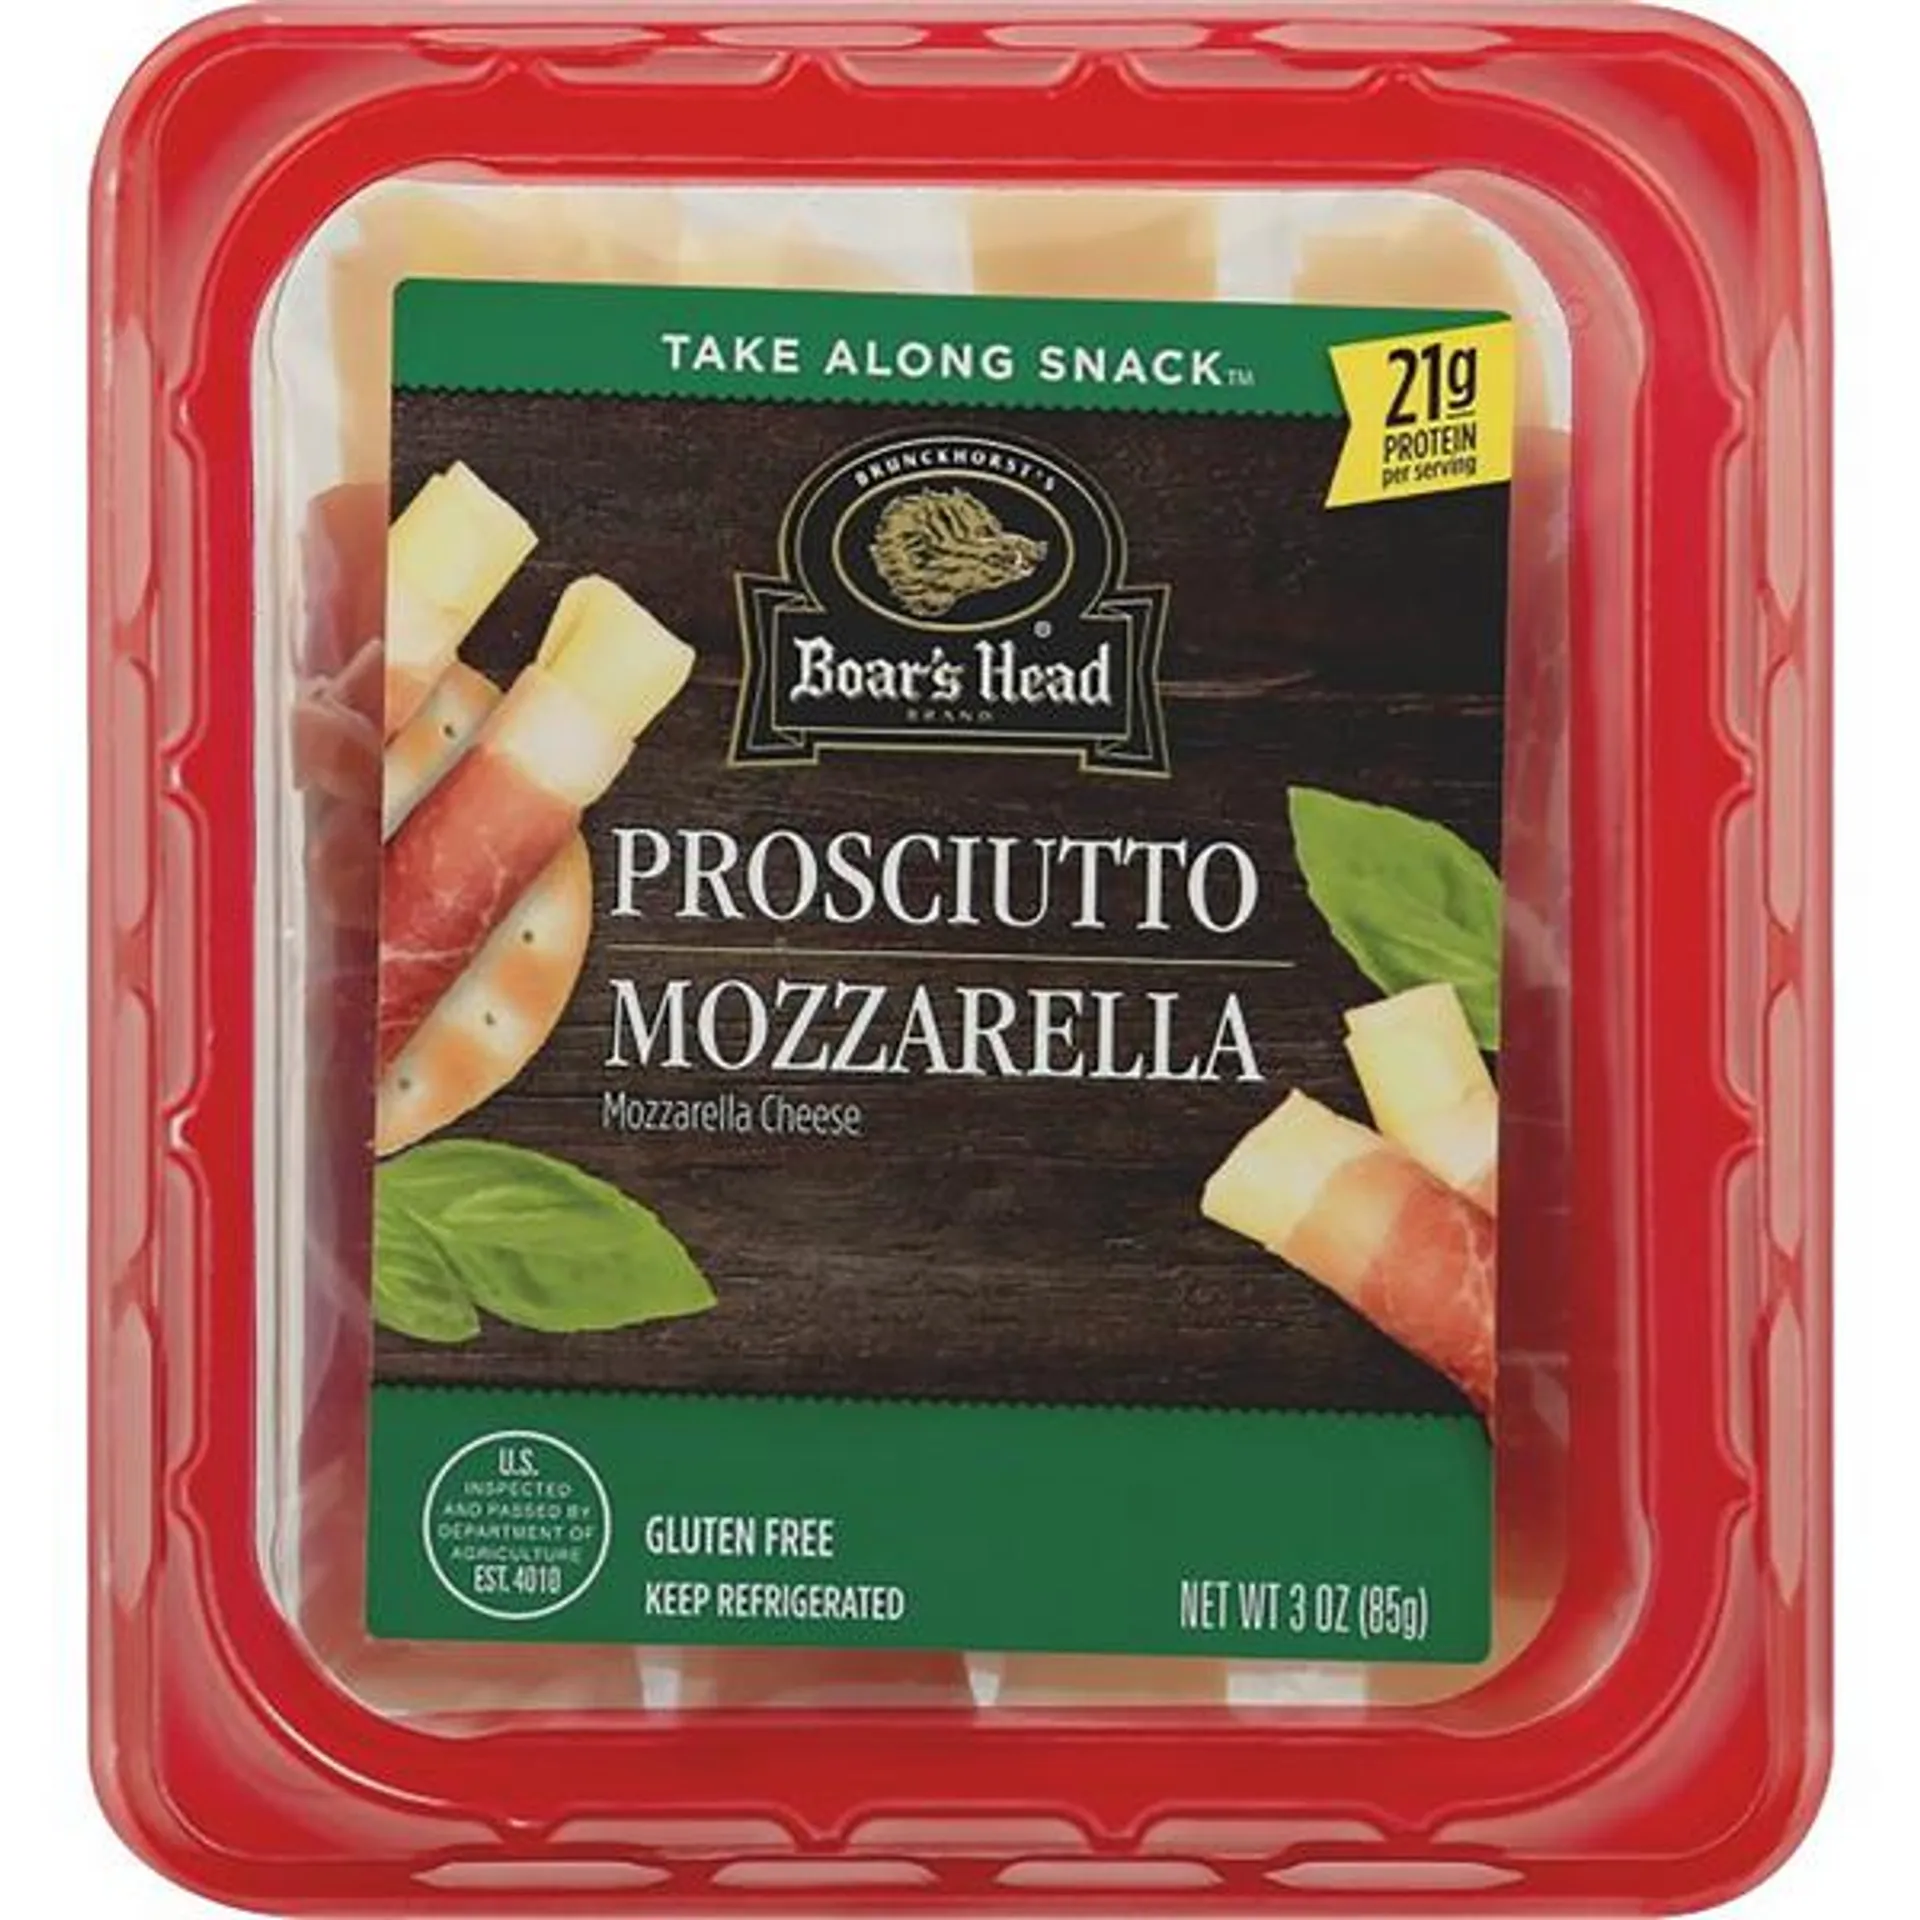 Boar's Head Prosciutto & Mozzarella Cheese Roll Up Snack - 3 Ounce